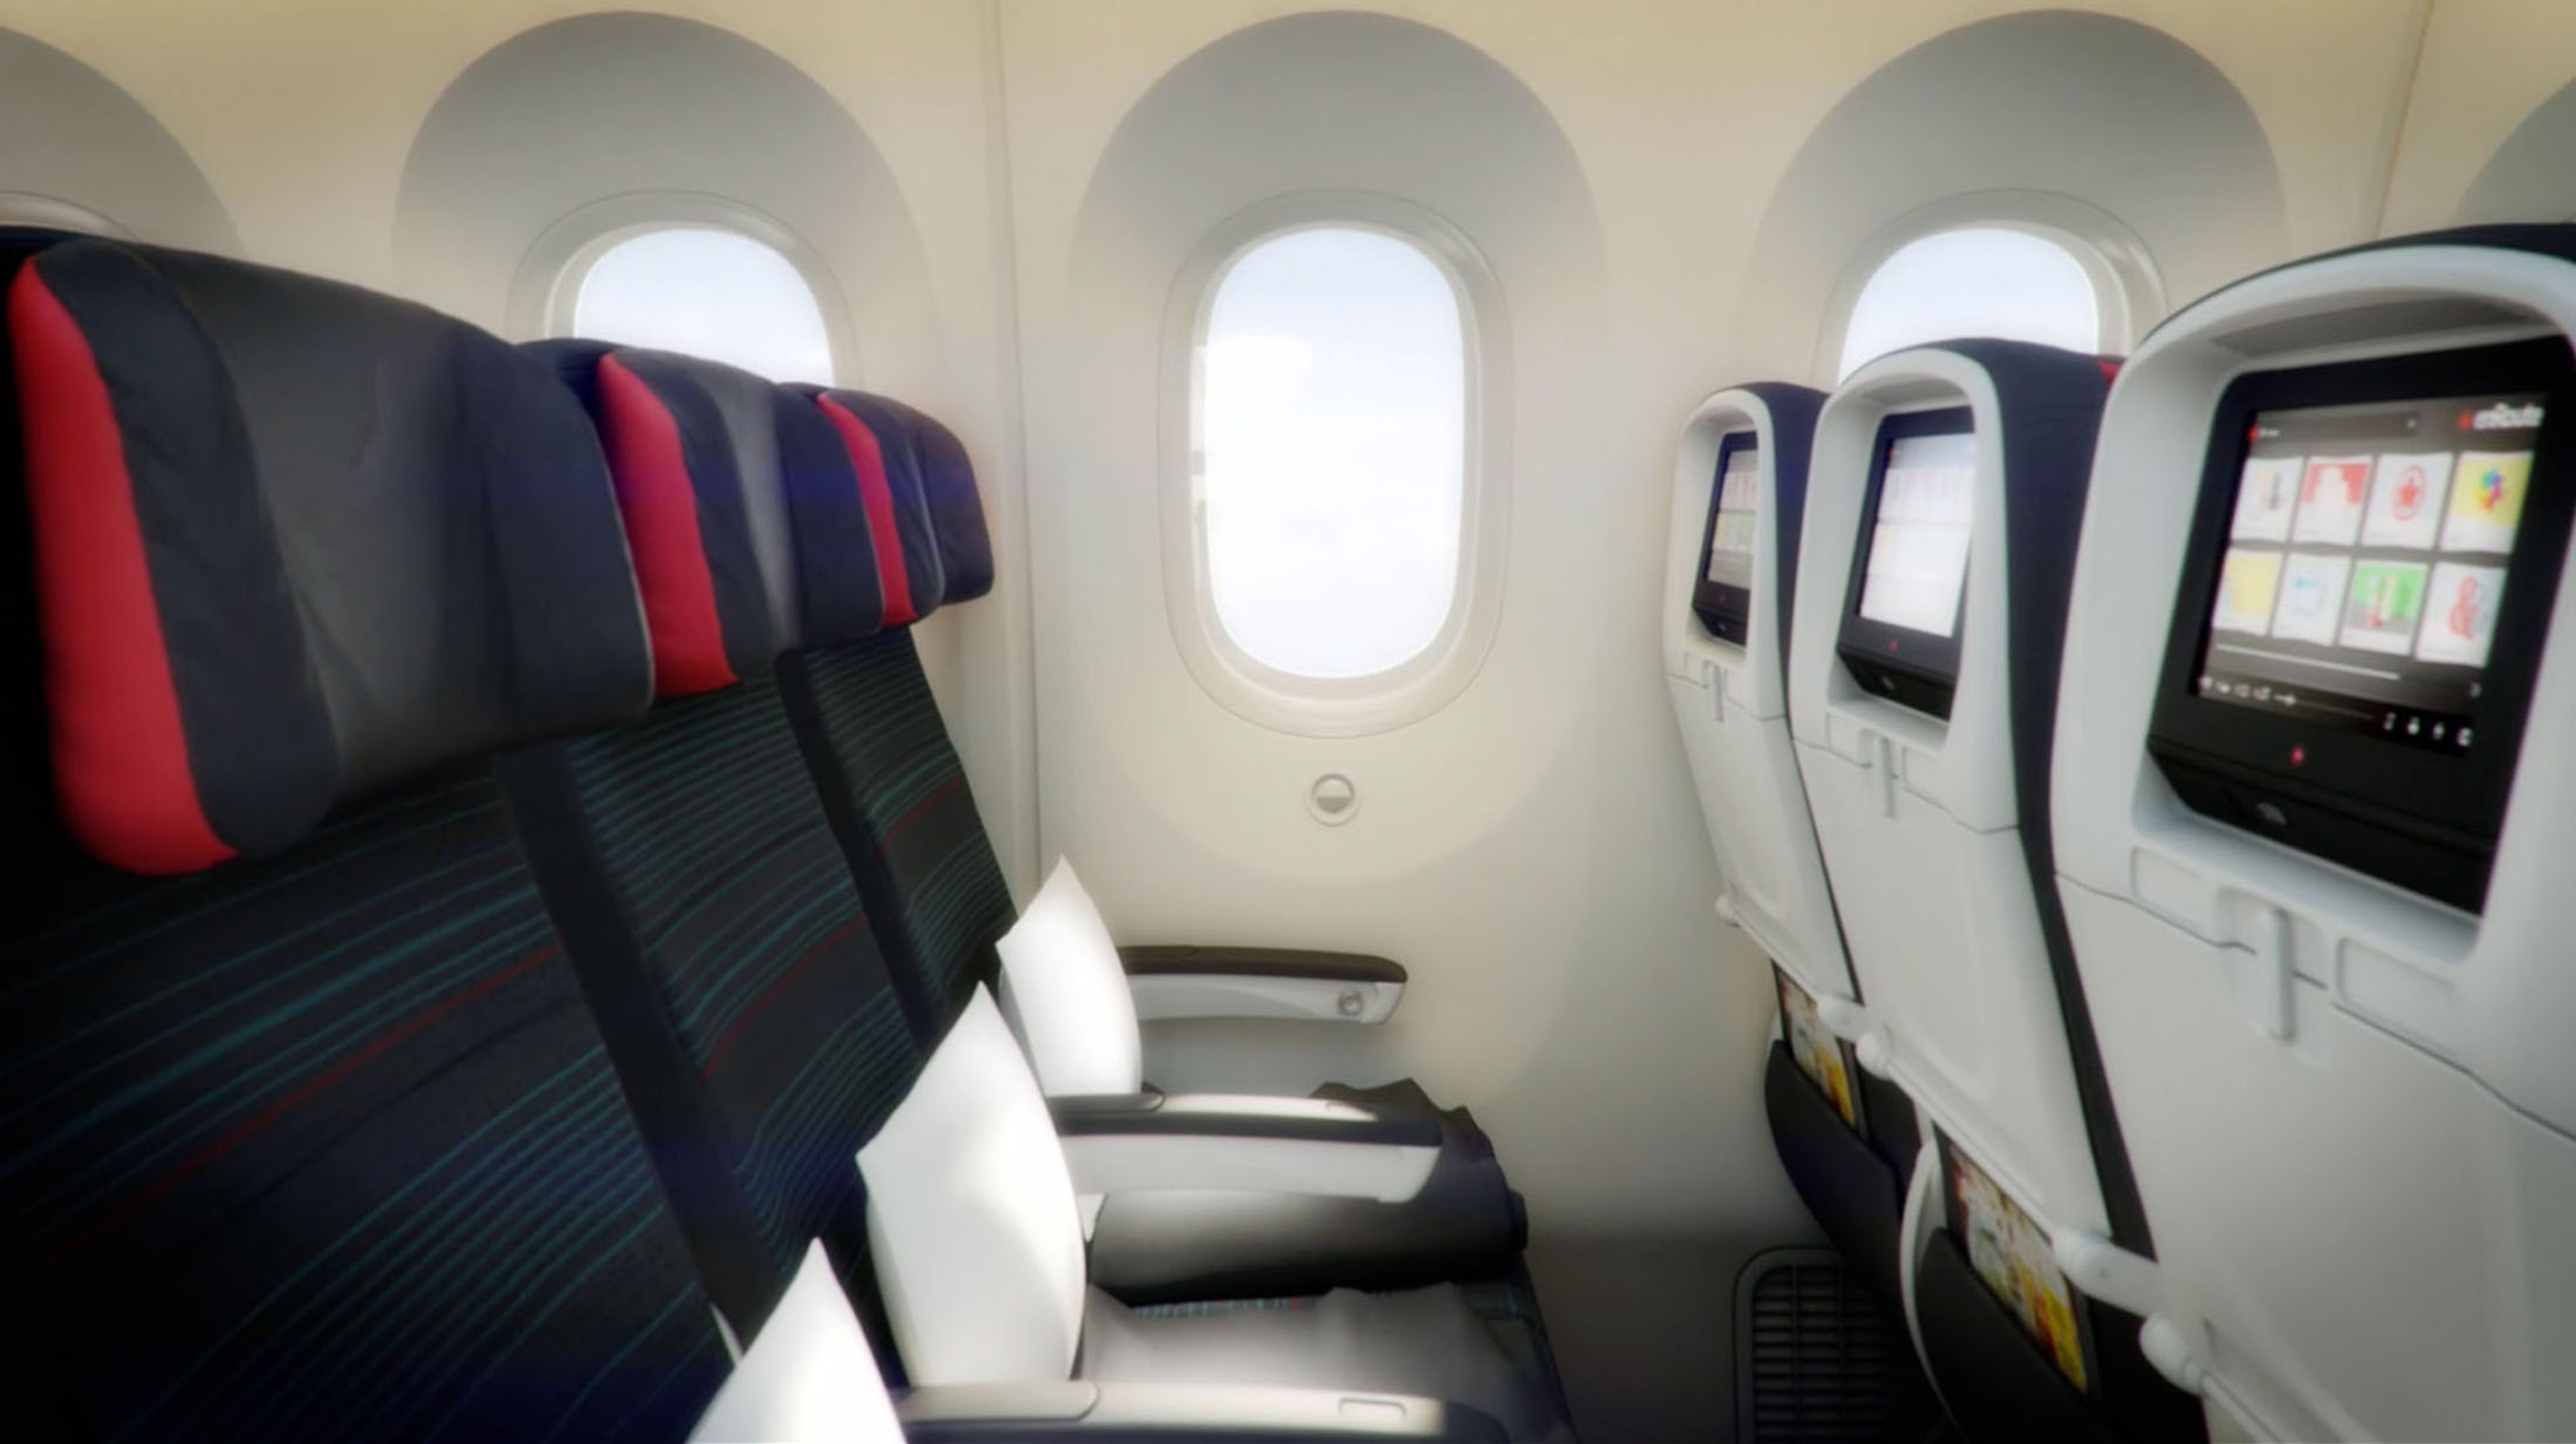 Economy seat (YSeat). (PRNewsFoto/Air Canada) (PRNewsFoto/AIR CANADA)